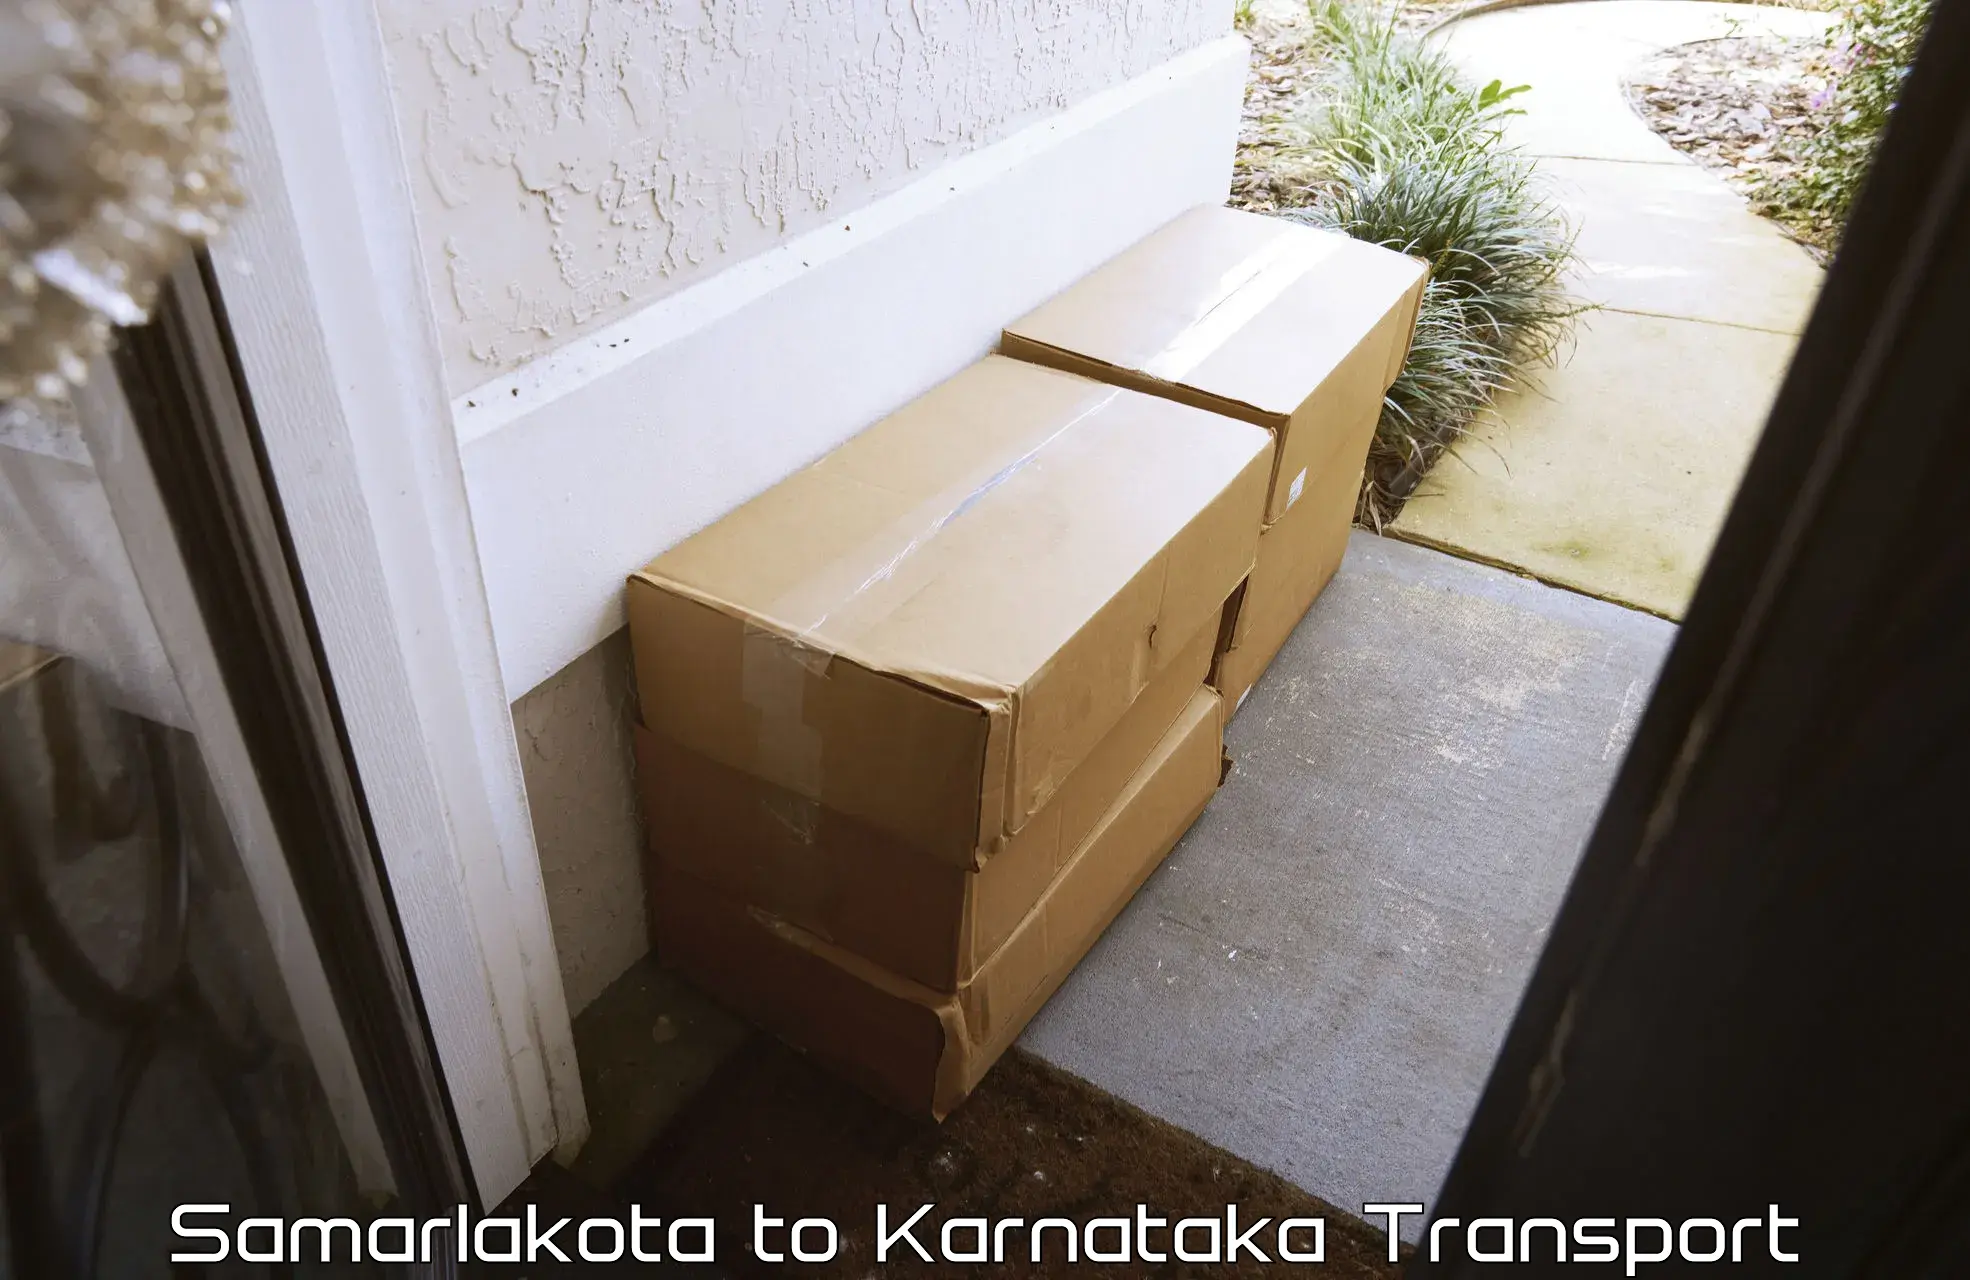 Luggage transport services Samarlakota to Dharmasthala